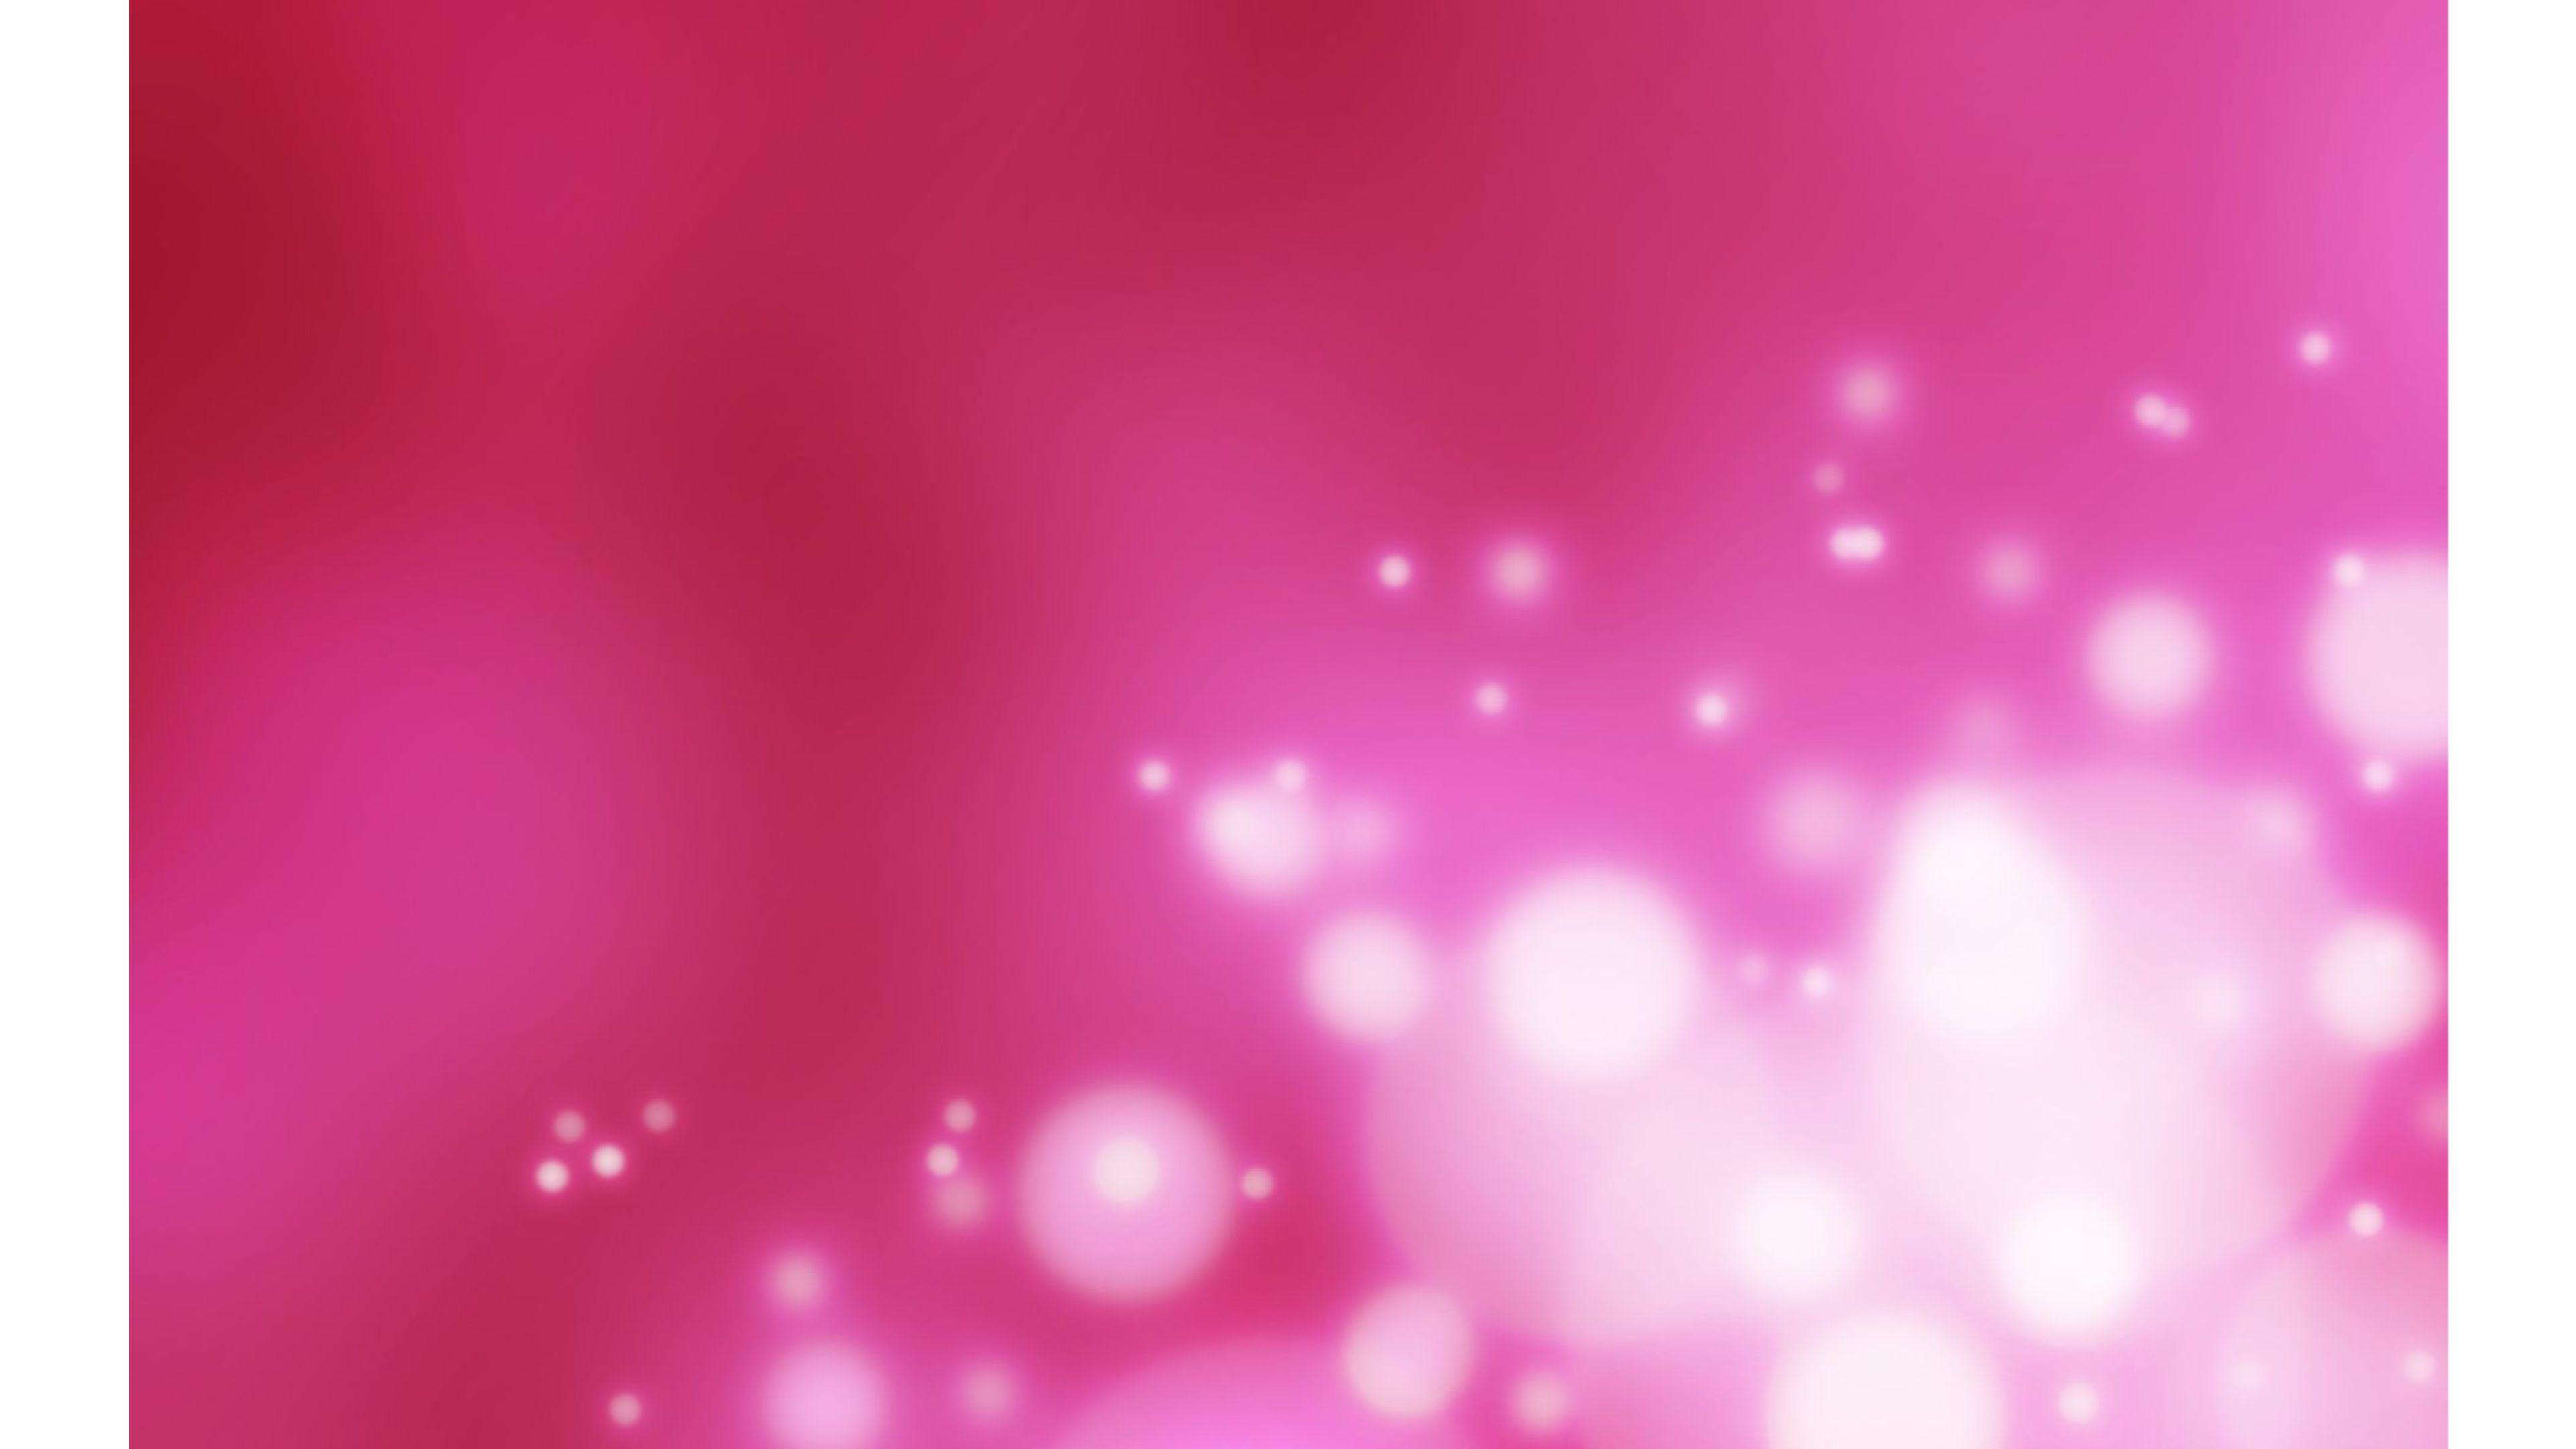 Nếu bạn đang tìm kiếm những hình nền 4K màu hồng đẹp mê hồn cho điện thoại, máy tính hay máy tính bảng của mình thì không nên bỏ qua bộ sưu tập hình nền màu hồng này. Những hình ảnh với gam màu hồng tươi sáng sẽ giúp bạn tạo nên không gian làm việc và giải trí thú vị.